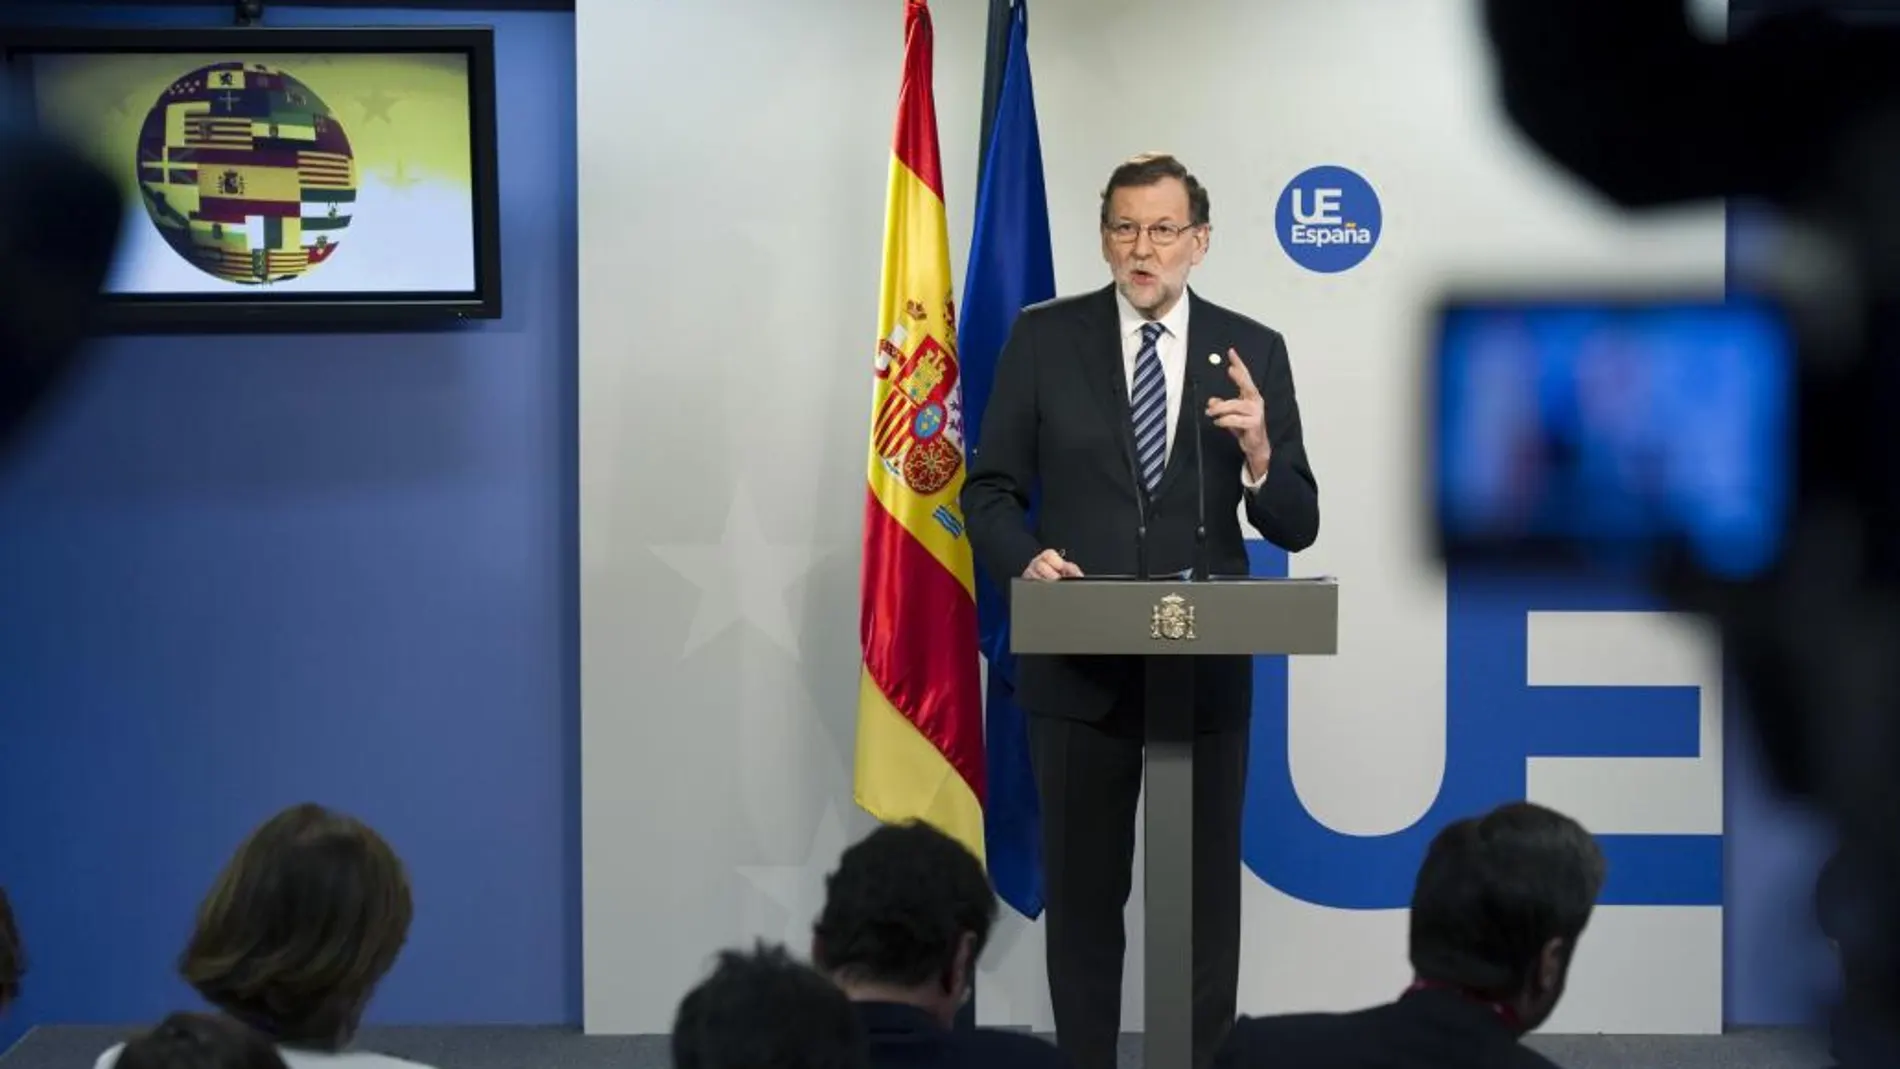 El presidente del Gobierno, Mariano Rajoy, durante la rueda de prensa al término de la reunión de Bruselas de los líderes de la Unión Europea (UE)